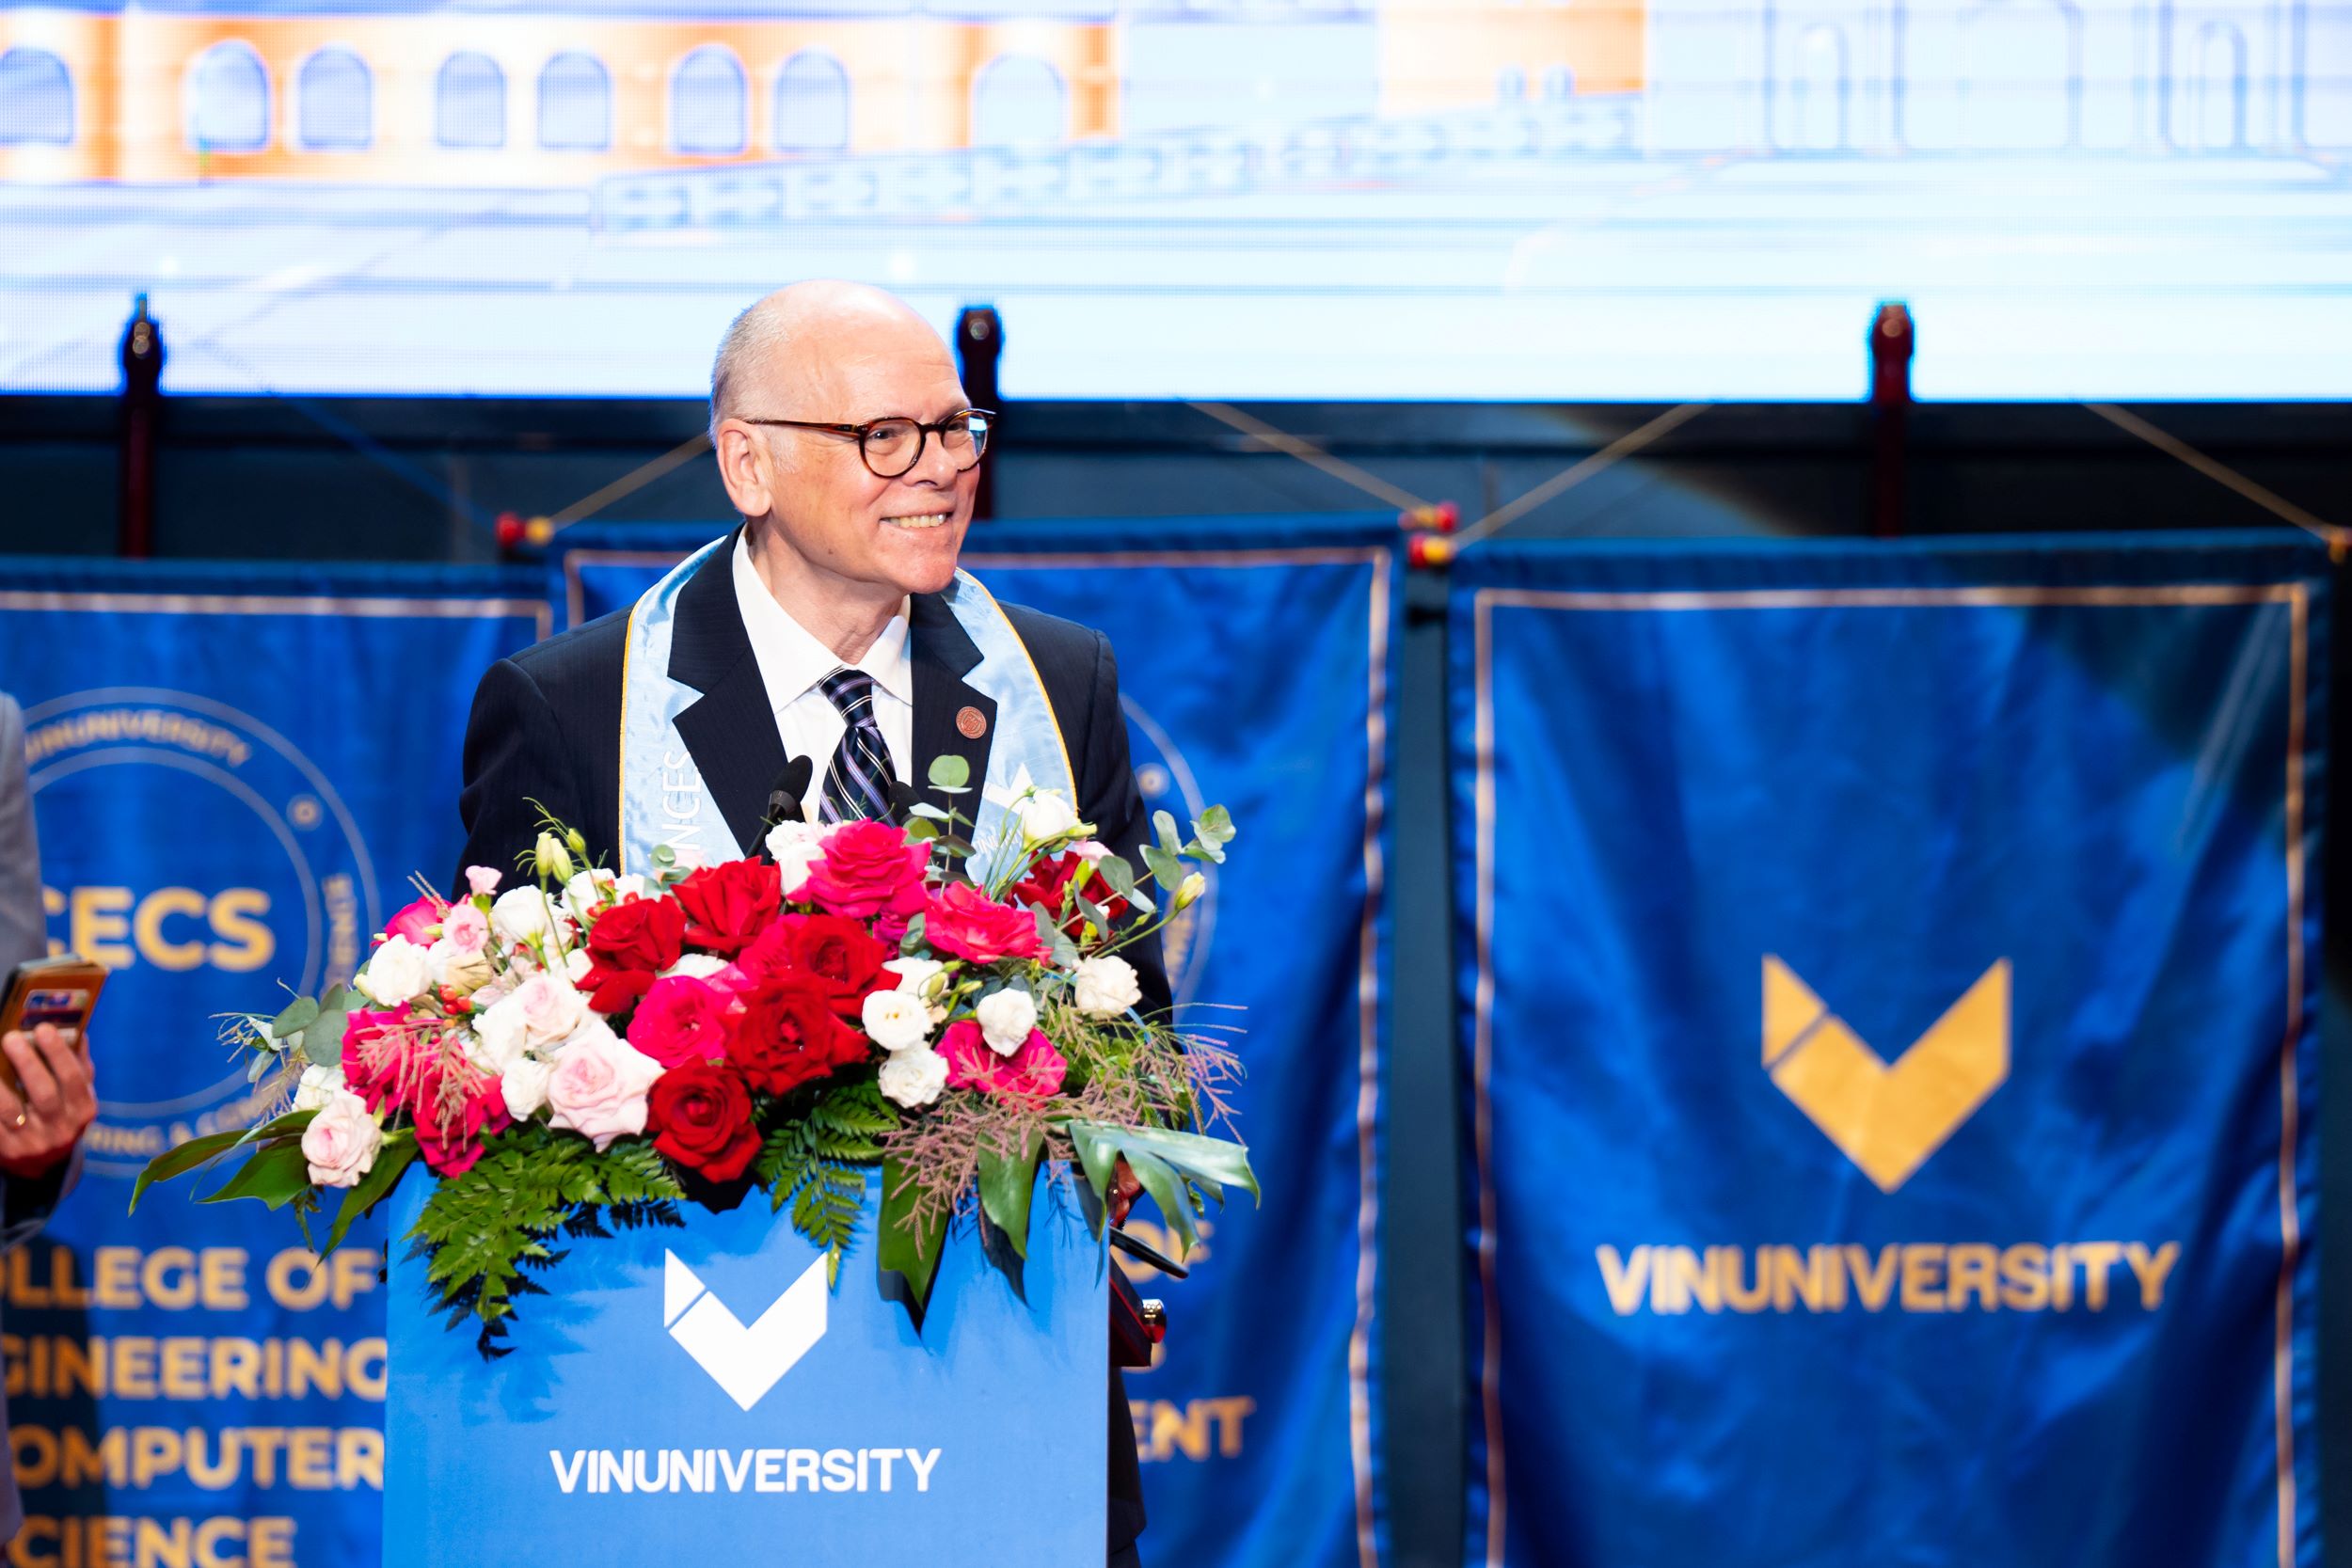 GS Max J. Pfeffer (Đại học Cornell) phát biểu tại Lễ tốt nghiệp niên khoá đầu tiên của Đại học VinUni.